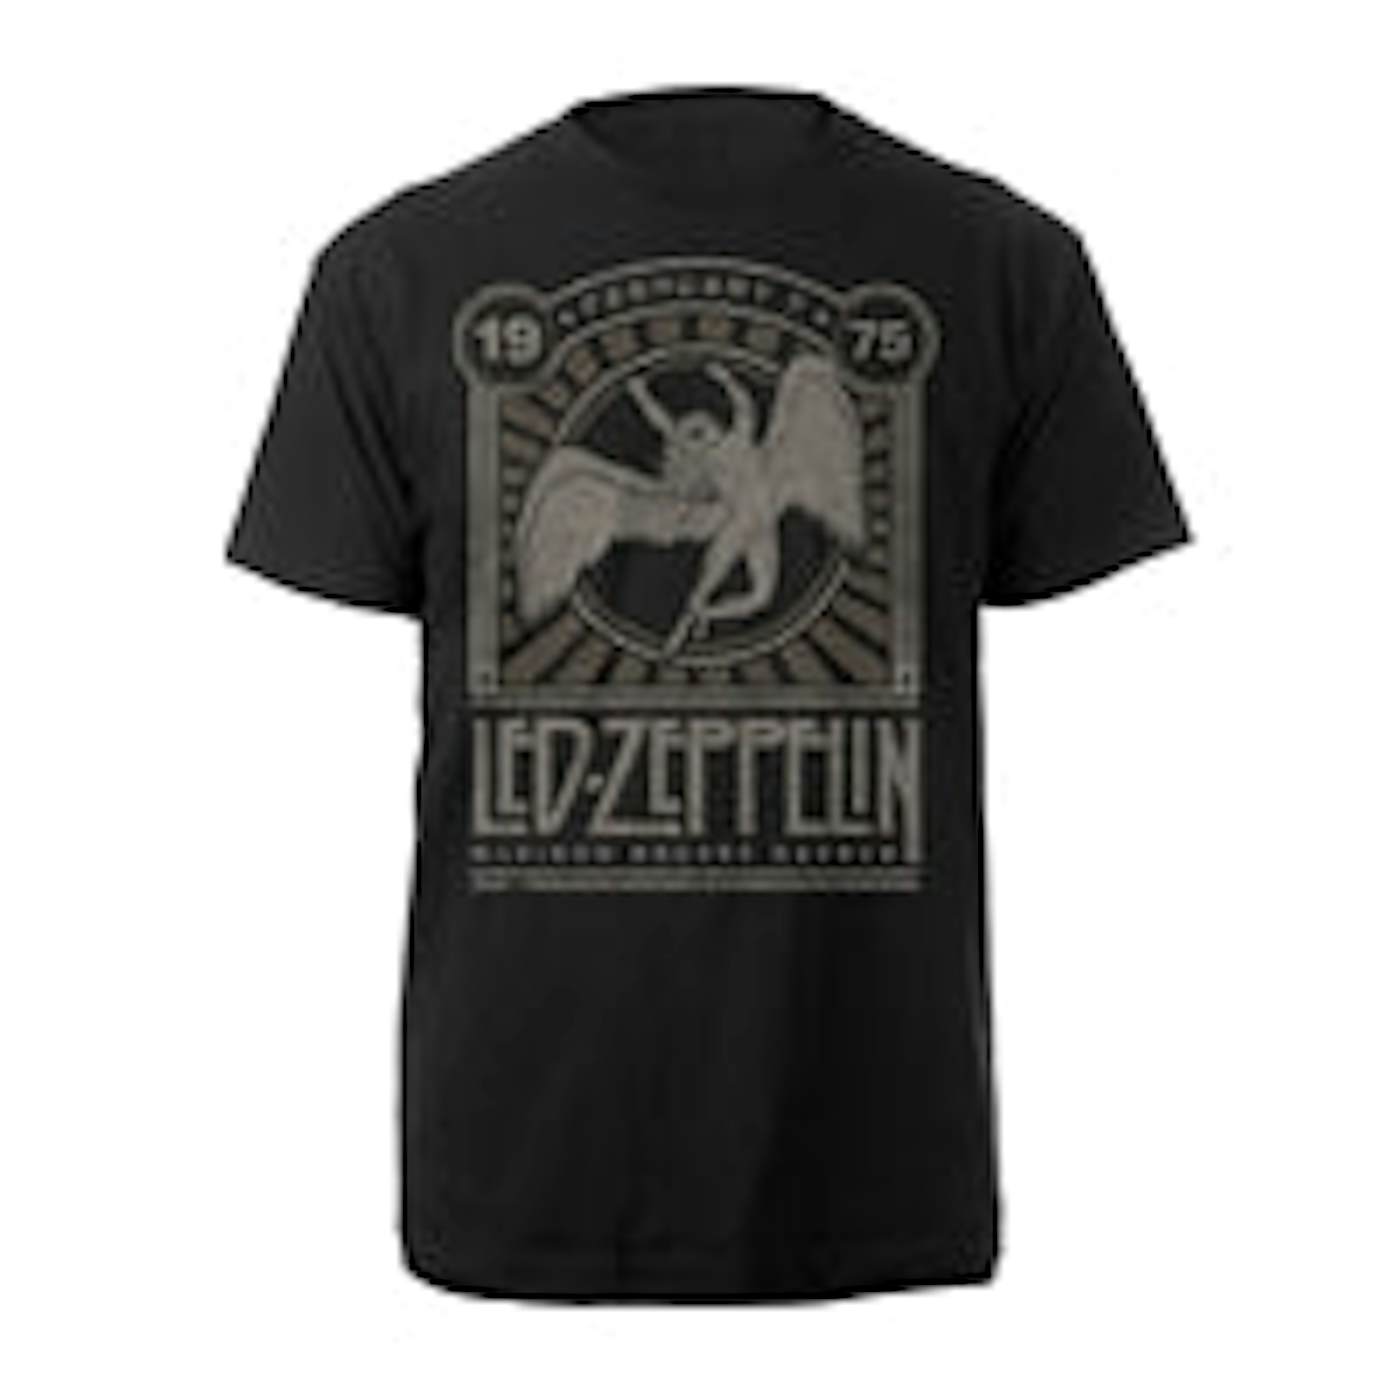 Led Zeppelin T Shirt - Madison Square Garden 1975